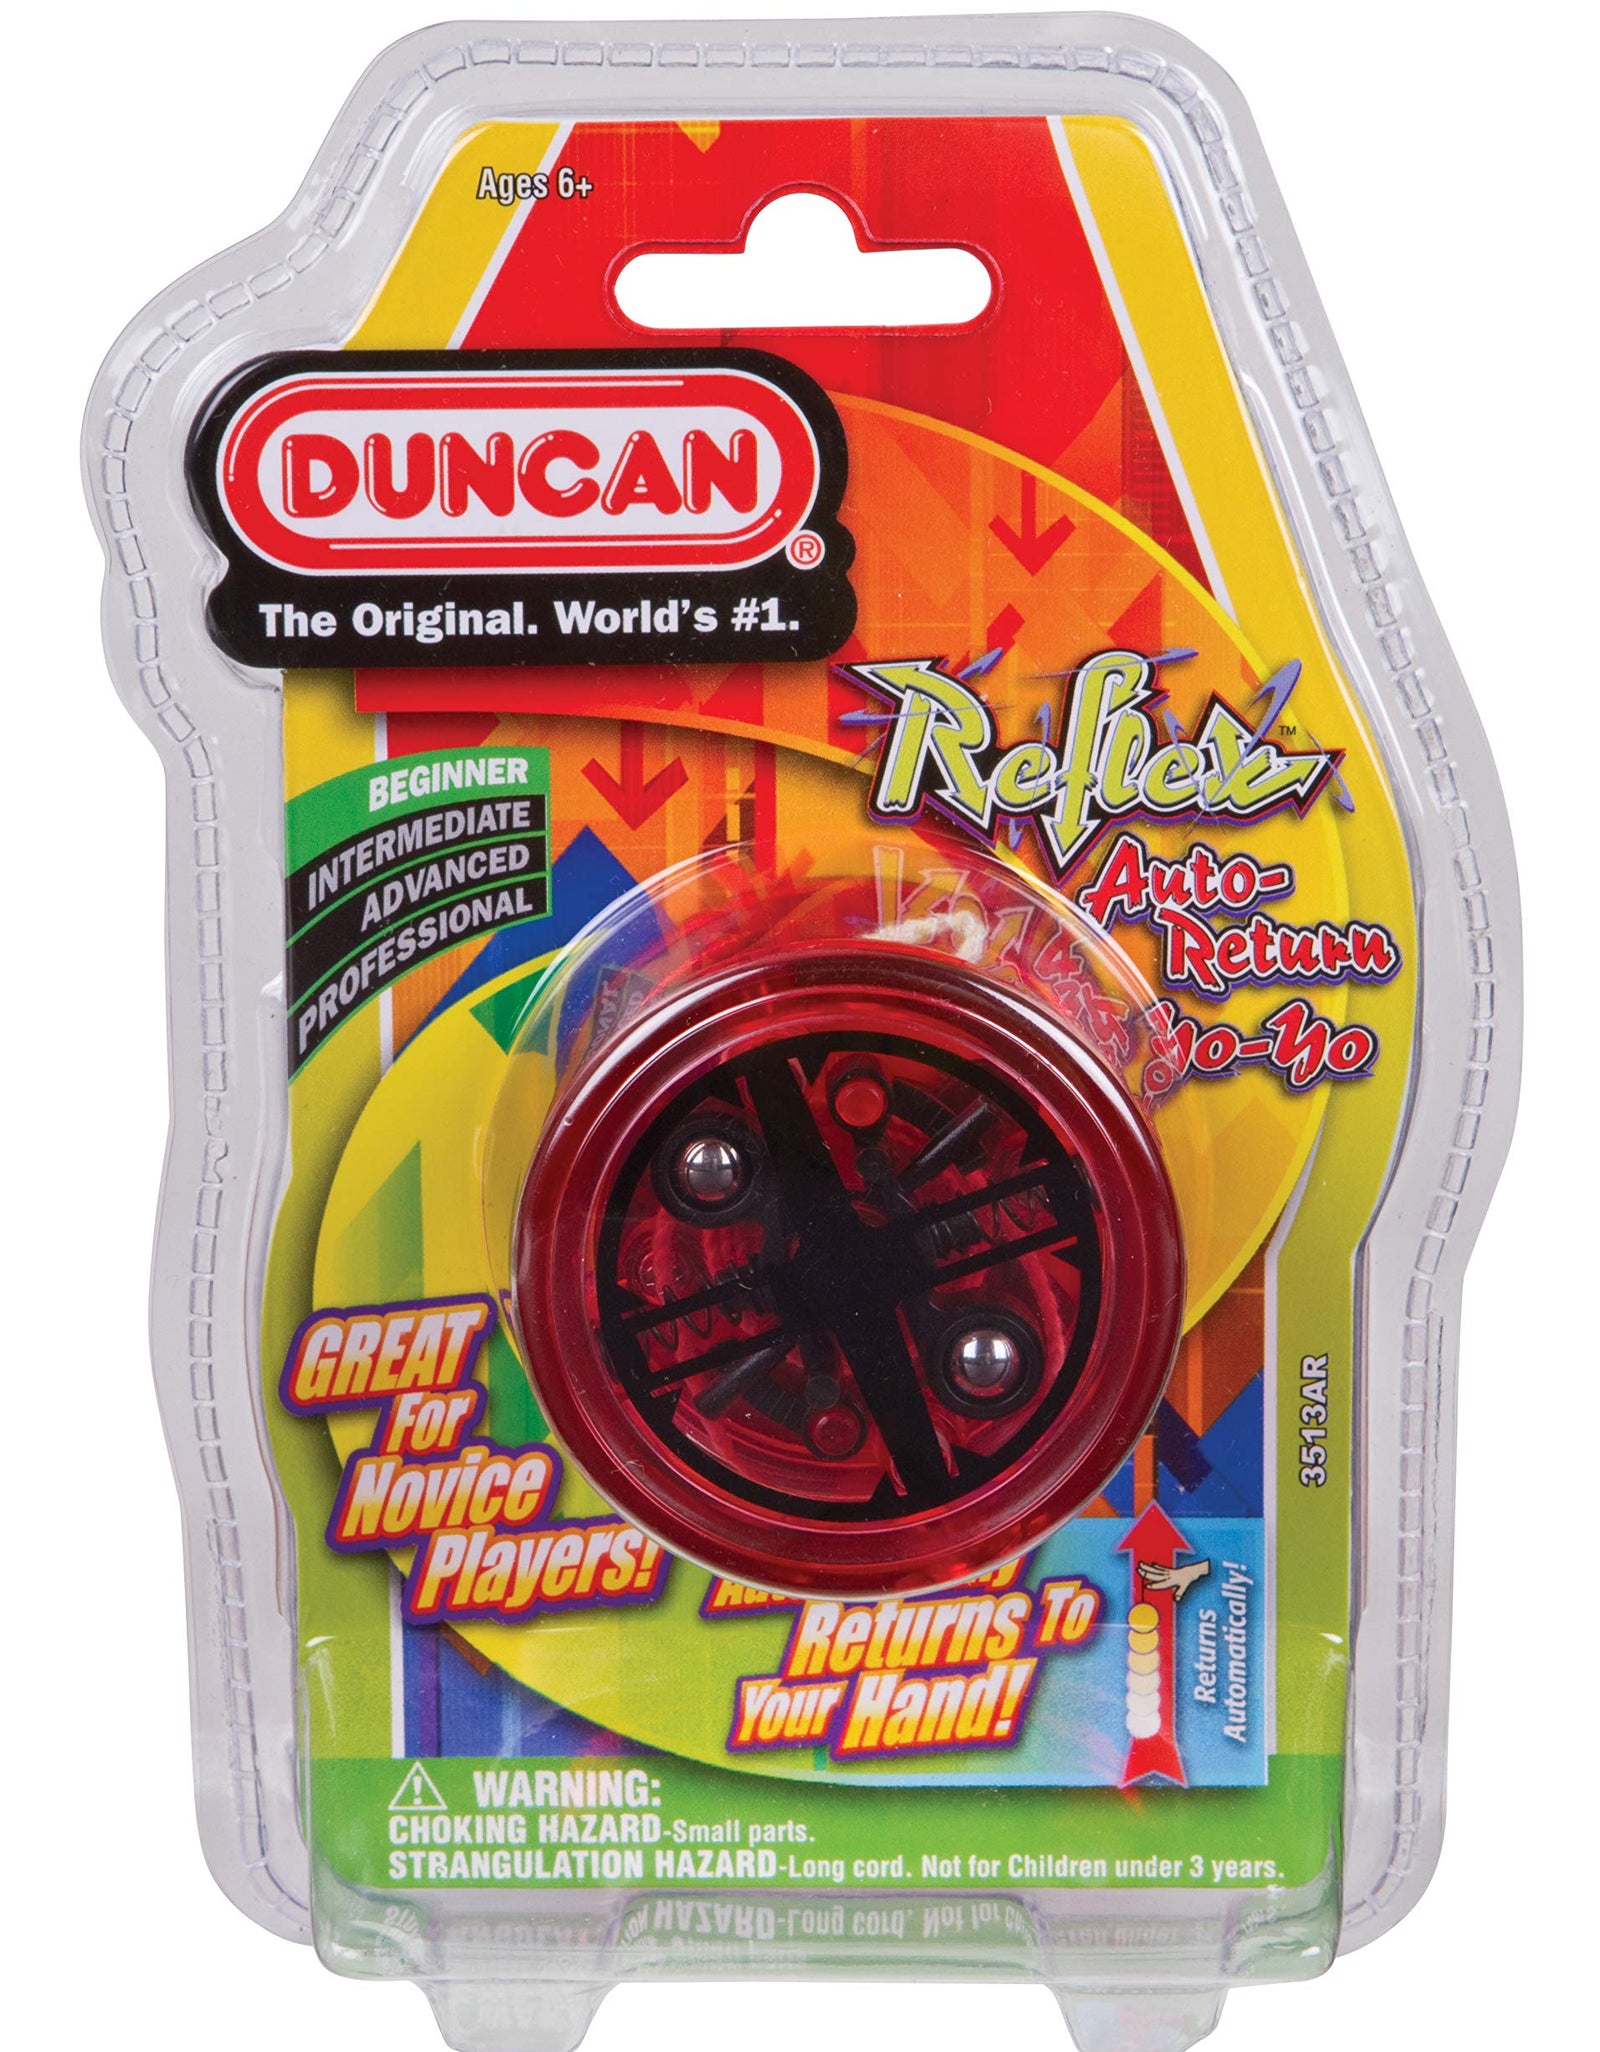 Duncan Toys Reflex Auto Return Yo-Yo, Beginner String Trick Yo-Yo, 1 Yo-Yo, Colors May Vary